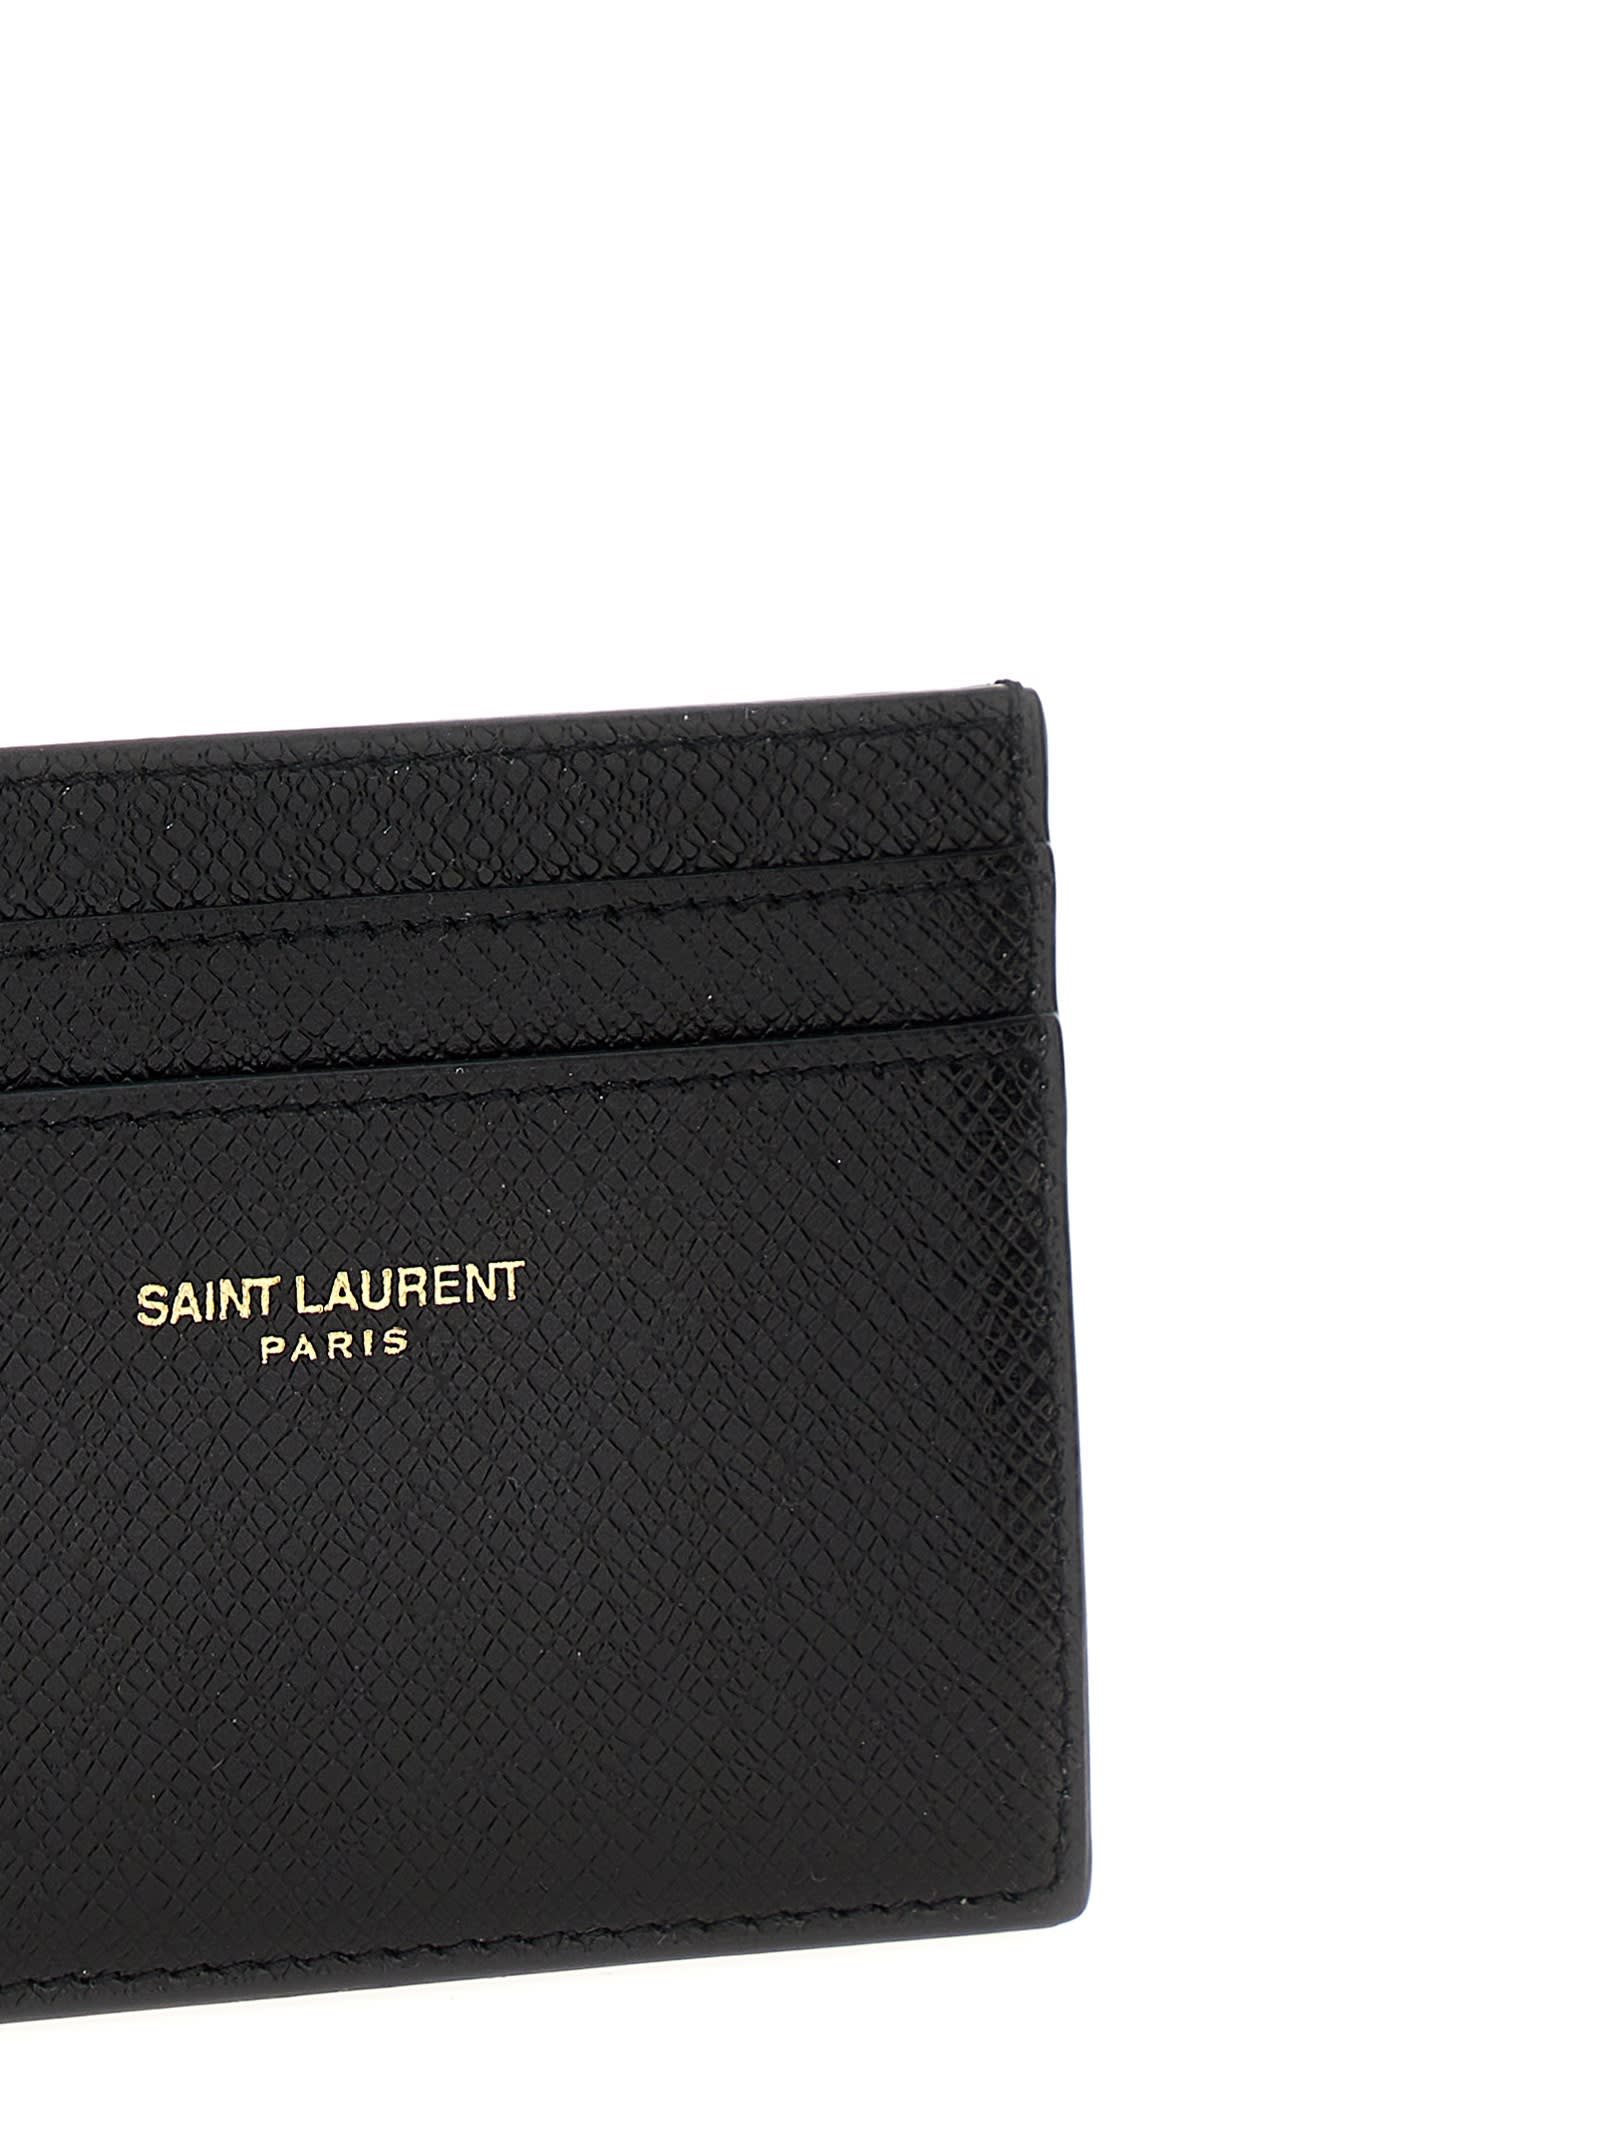 Shop Saint Laurent Paris Card Holder In Black